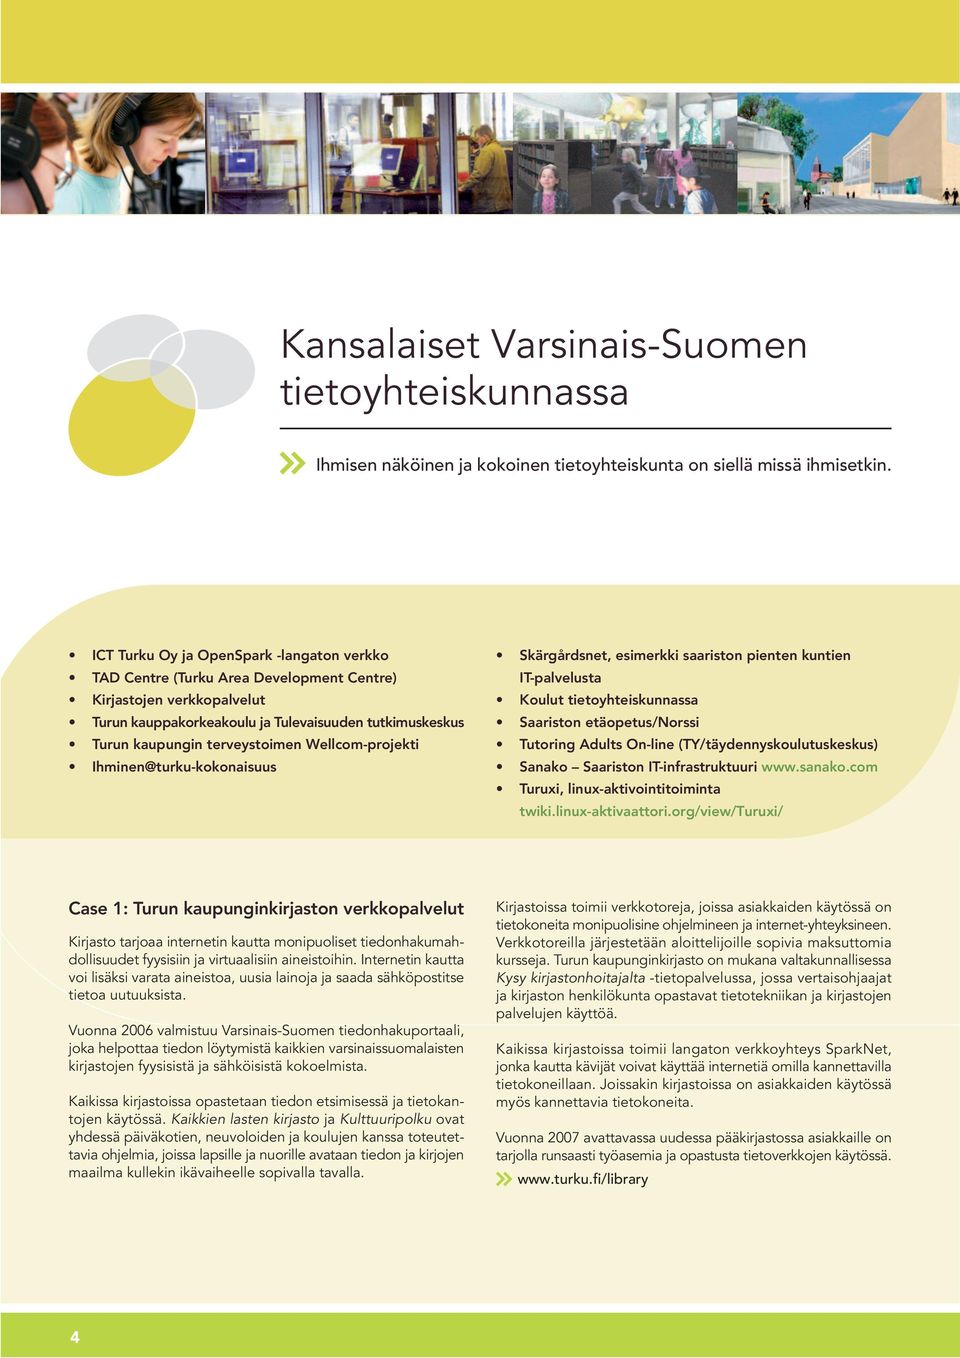 Wellcom-projekti Ihminen@turku-kokonaisuus Skärgårdsnet, esimerkki saariston pienten kuntien IT-palvelusta Koulut tietoyhteiskunnassa Saariston etäopetus/norssi Tutoring Adults On-line